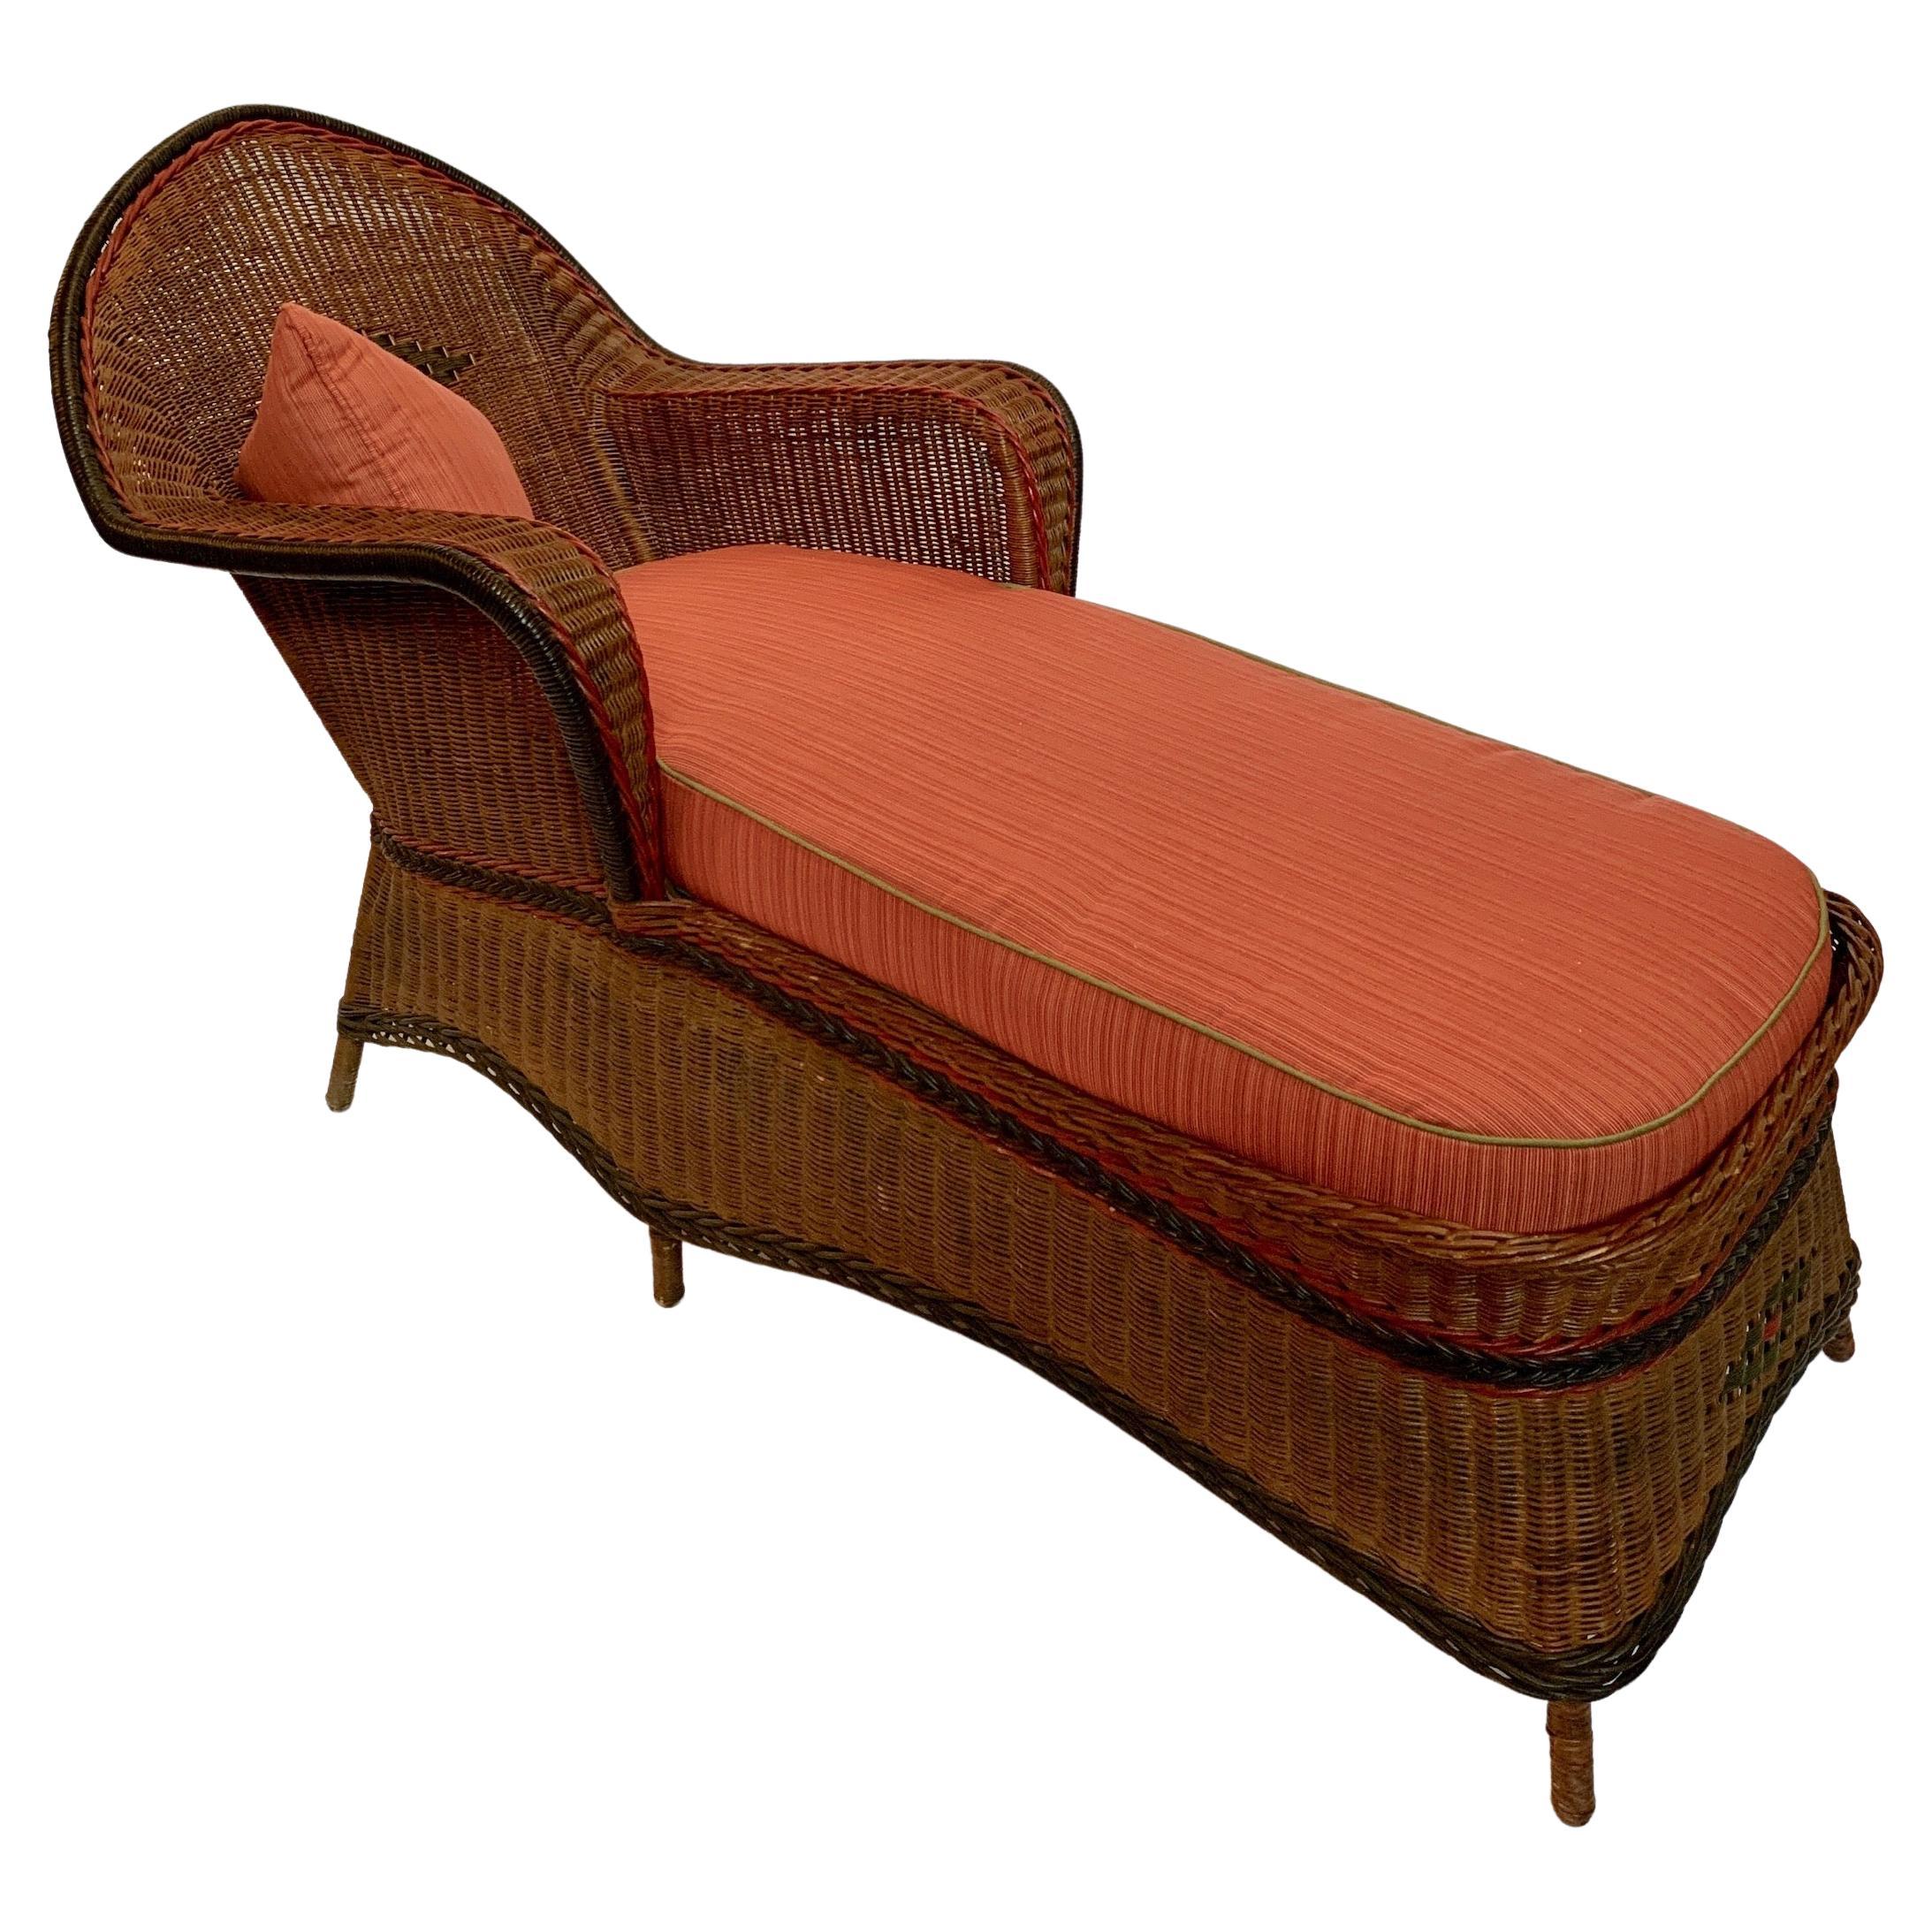 Chaise longue en roseau tressé de grande taille, fabriquée par la société Heywood Wakefield de Gardner, Ma. C. 1920
Cette chaise est magnifiquement tissée dans un beau roseau au fini naturel et accentuée par des roseaux tressés décorés de peinture